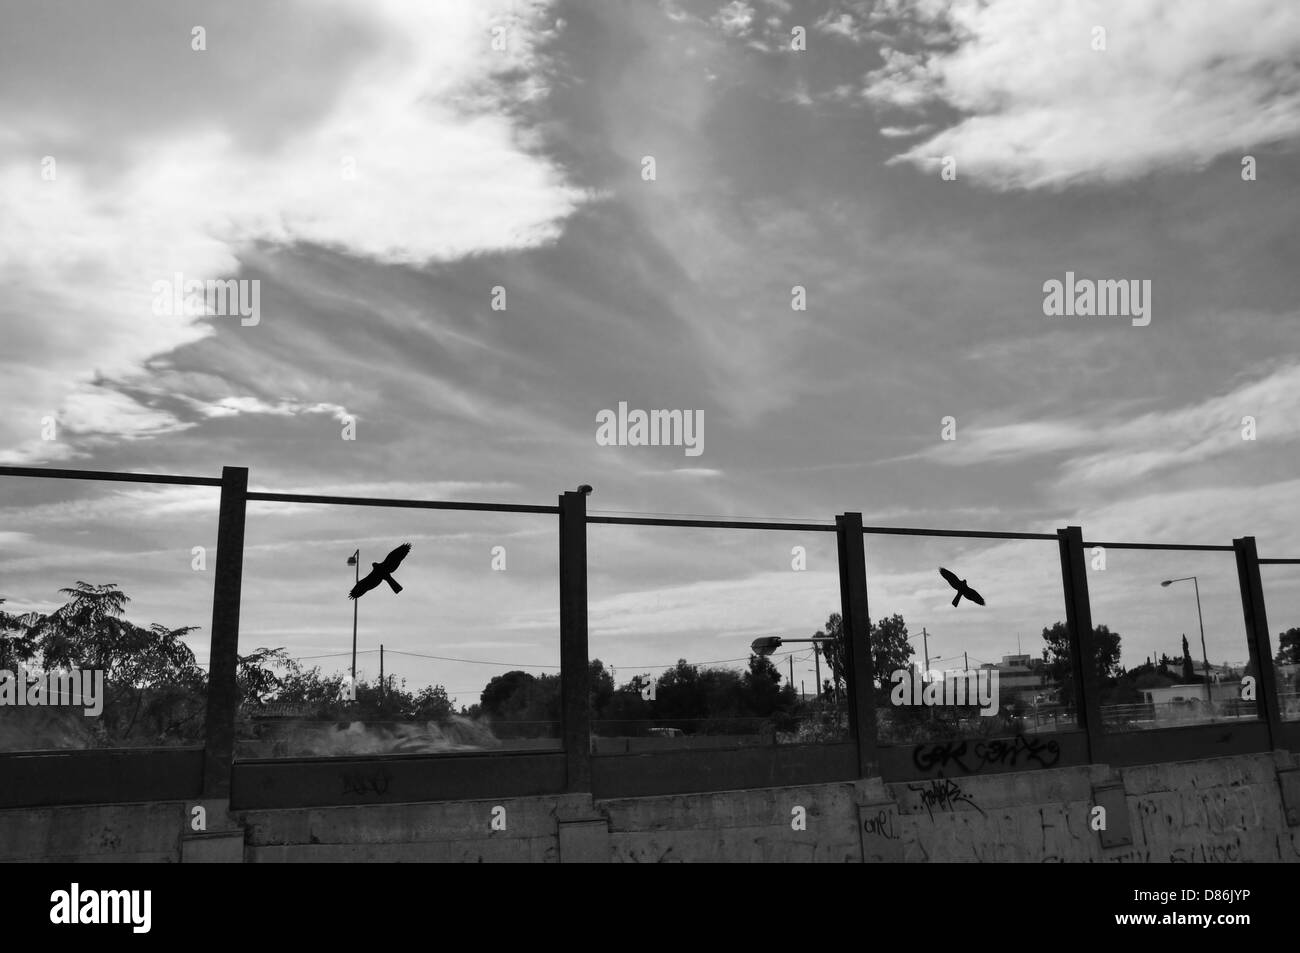 Silueta de aves volando sobre la autopista barrera de cristal, cielo de otoño de la ciudad. Blanco y negro. Foto de stock